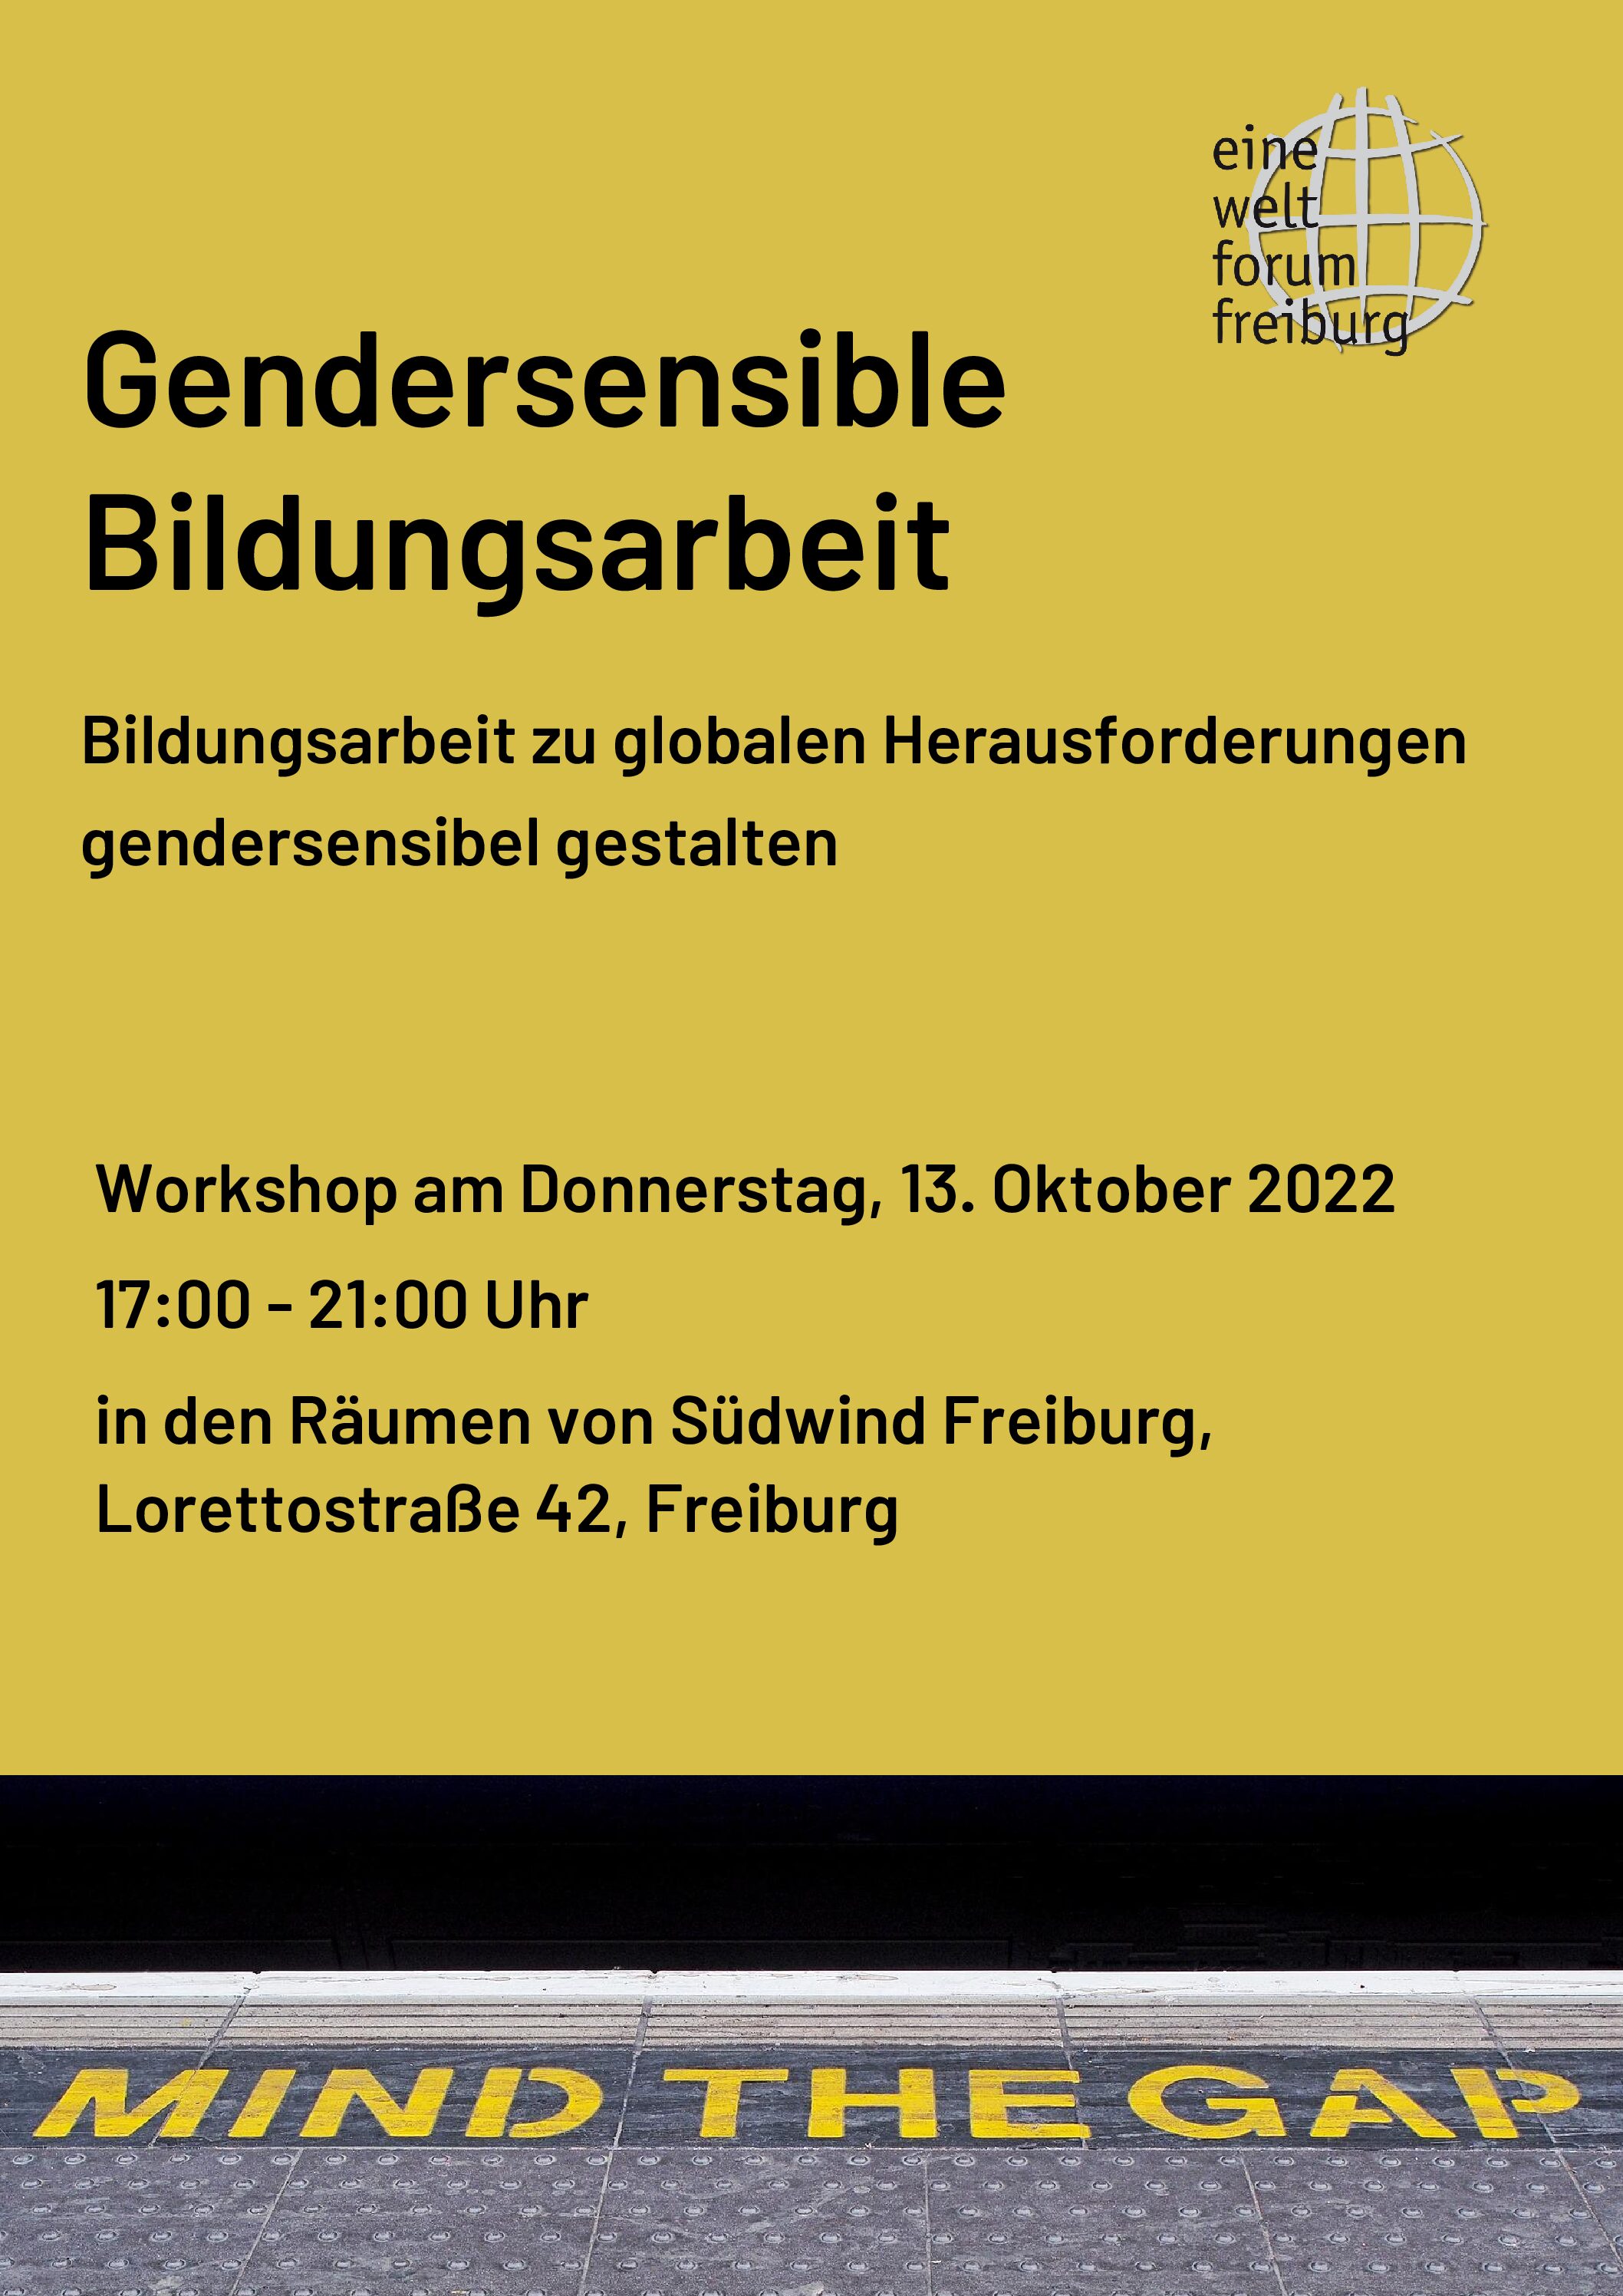 Workshop: Gendersensible Bildungsarbeit @ Südwind Freiburg